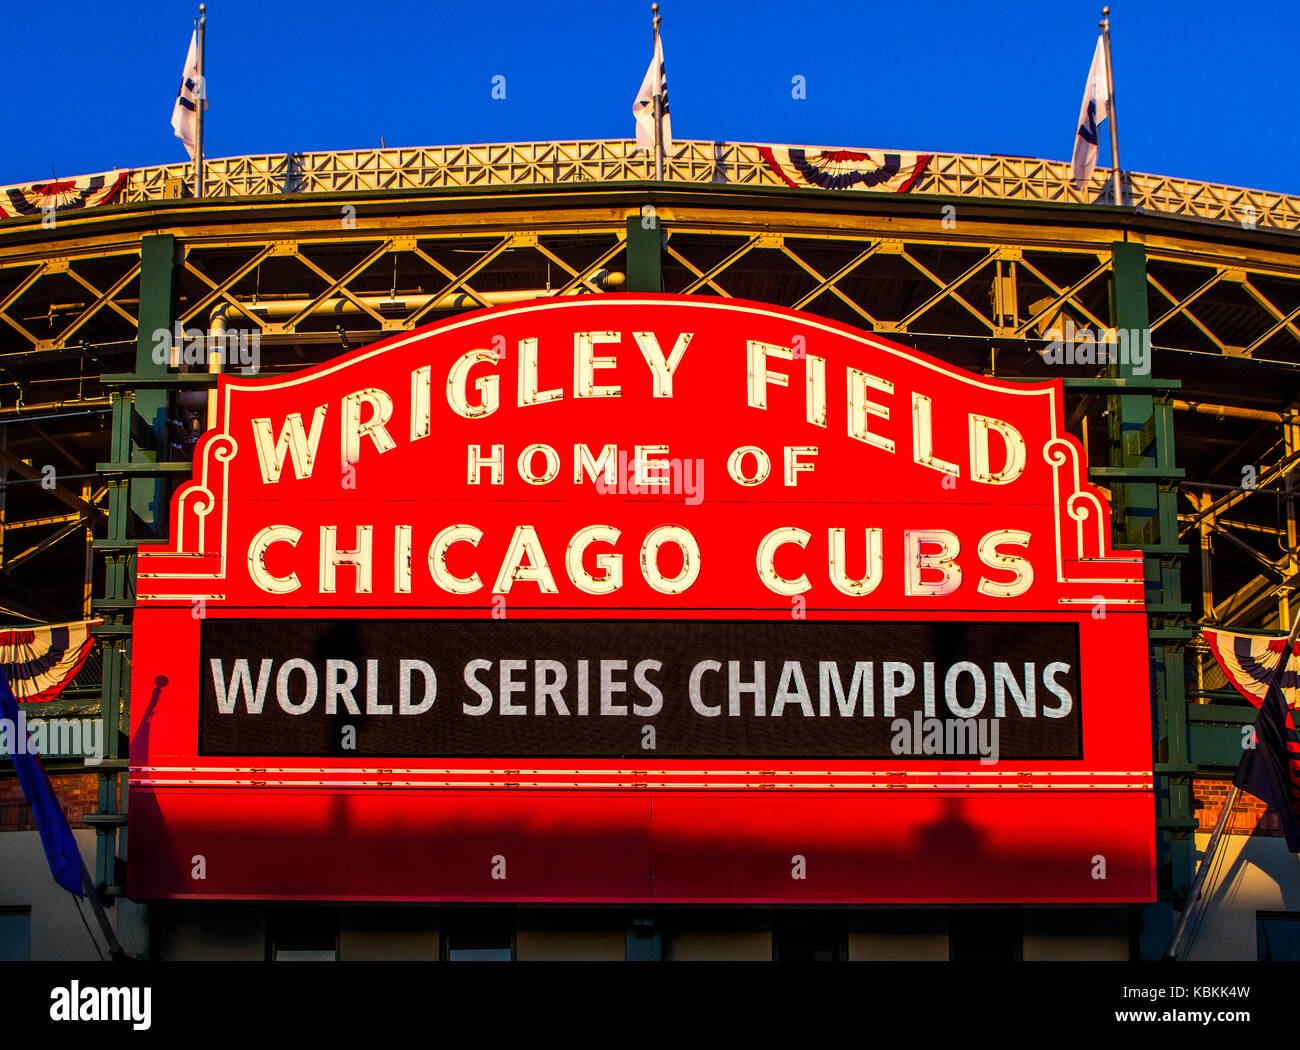 Wrigley Field cartel que anuncia los Cubs de Chicago como campeón de la serie mundial Foto de stock